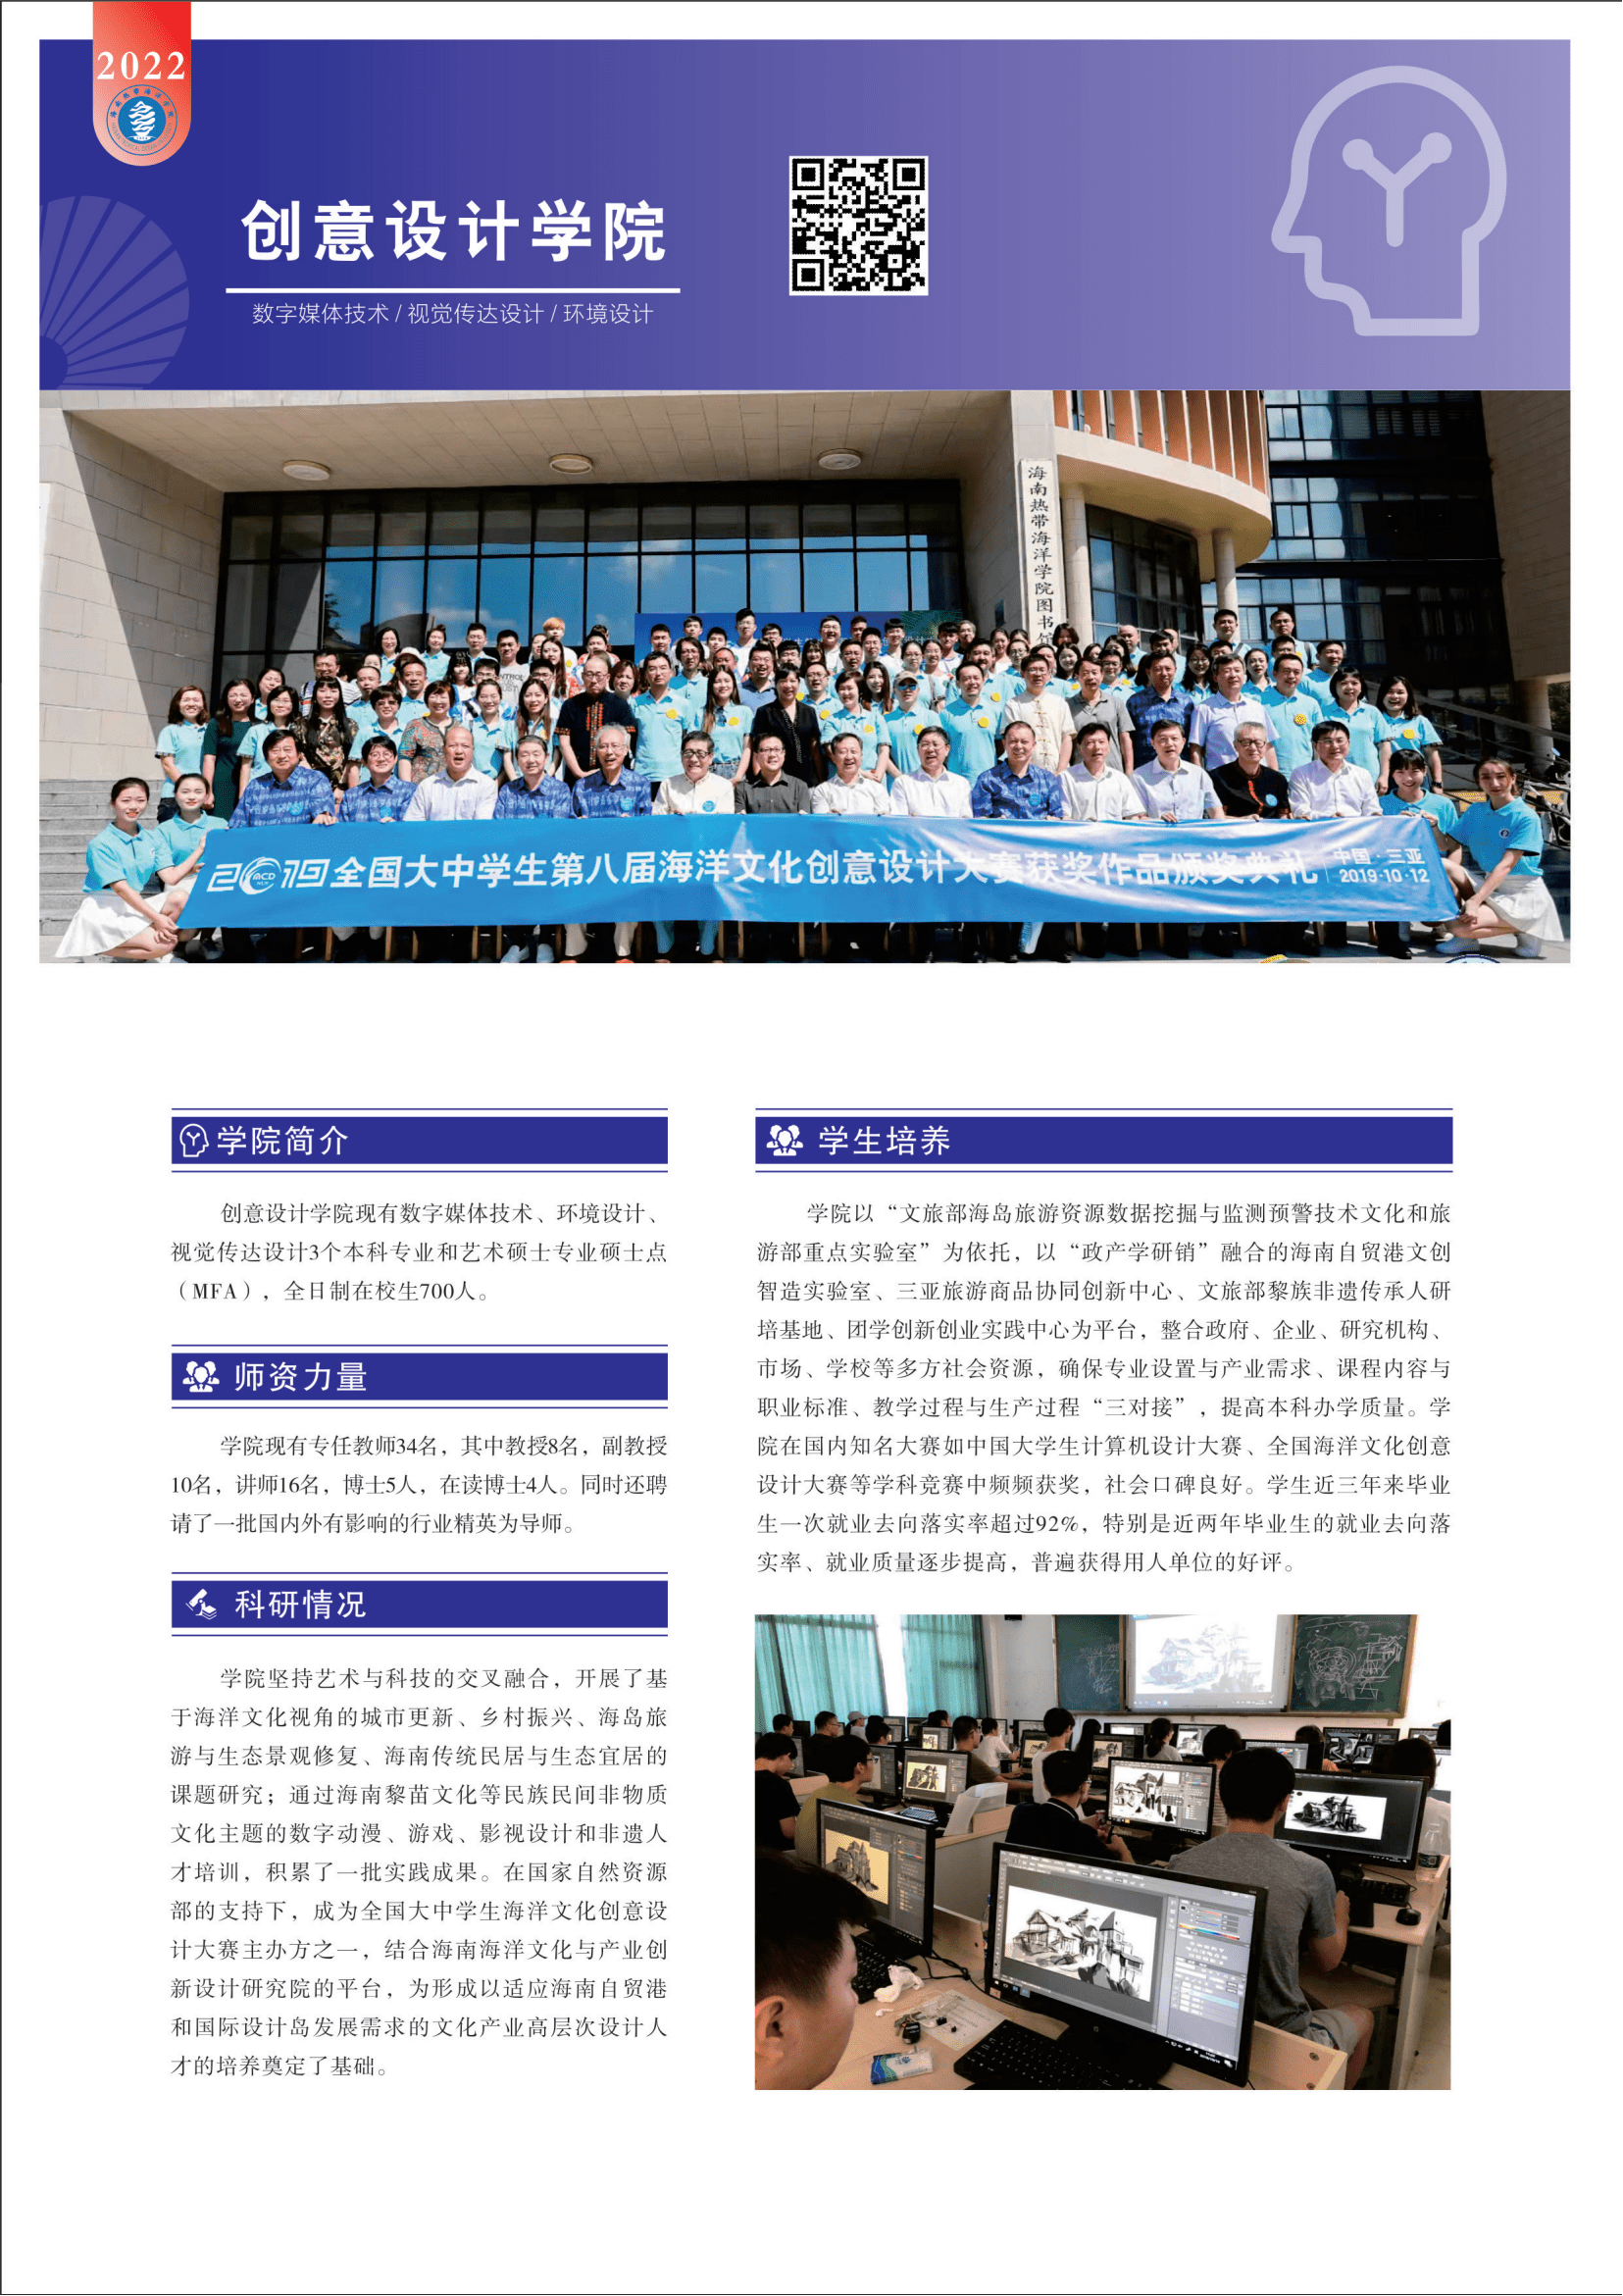 海南热带海洋学院2022年招生简章_45.png